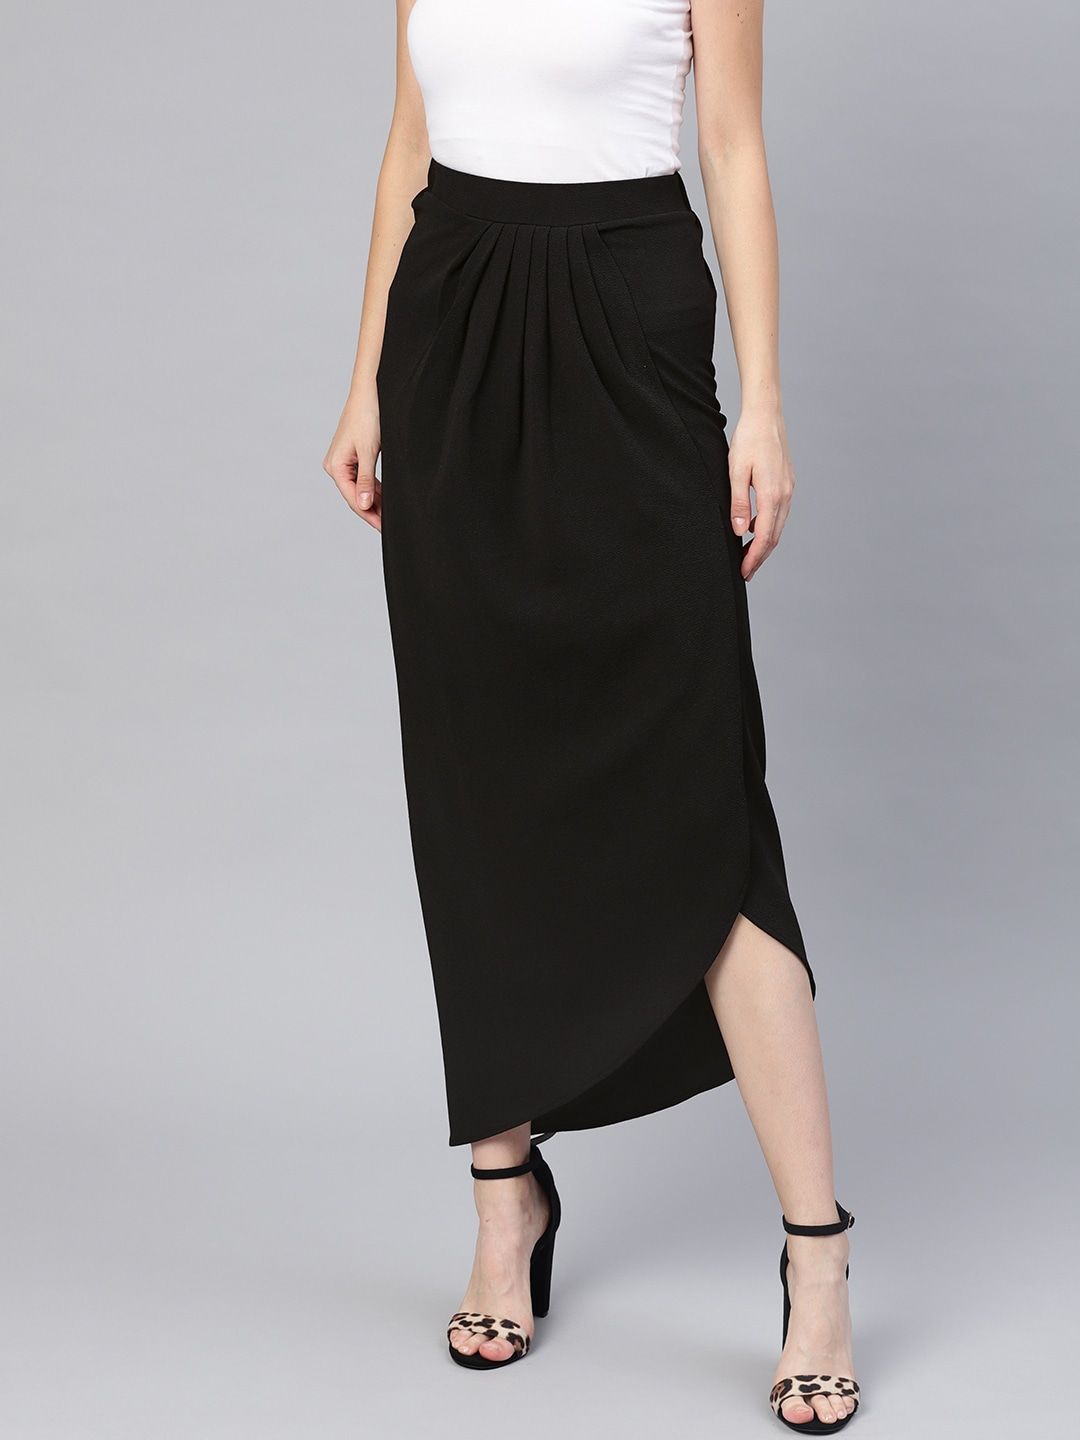 SASSAFRAS Black Midi Wrap Skirt Price in India